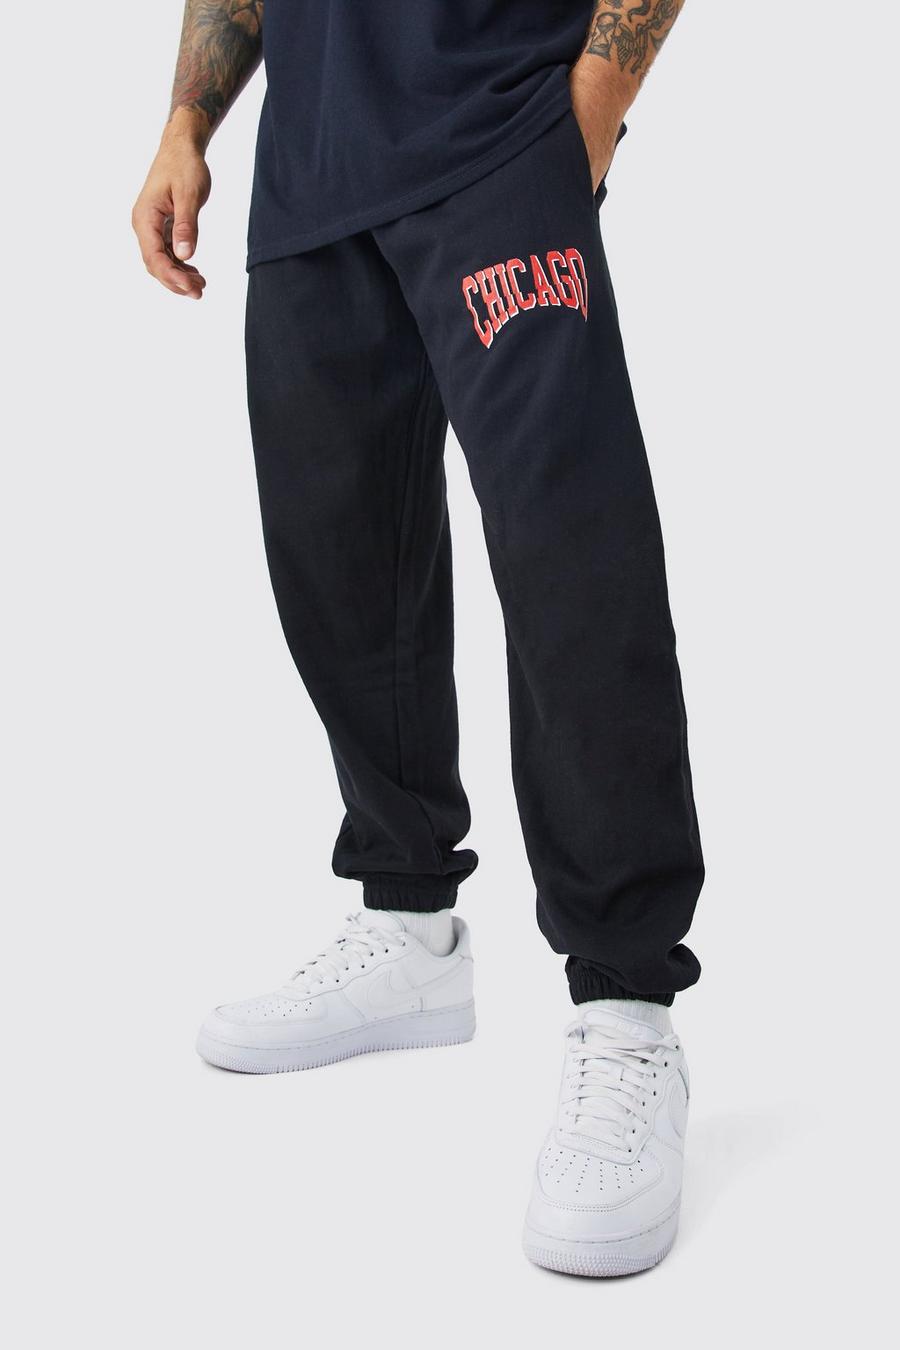 Pantaloni tuta oversize Chicago stile Varsity, Black image number 1